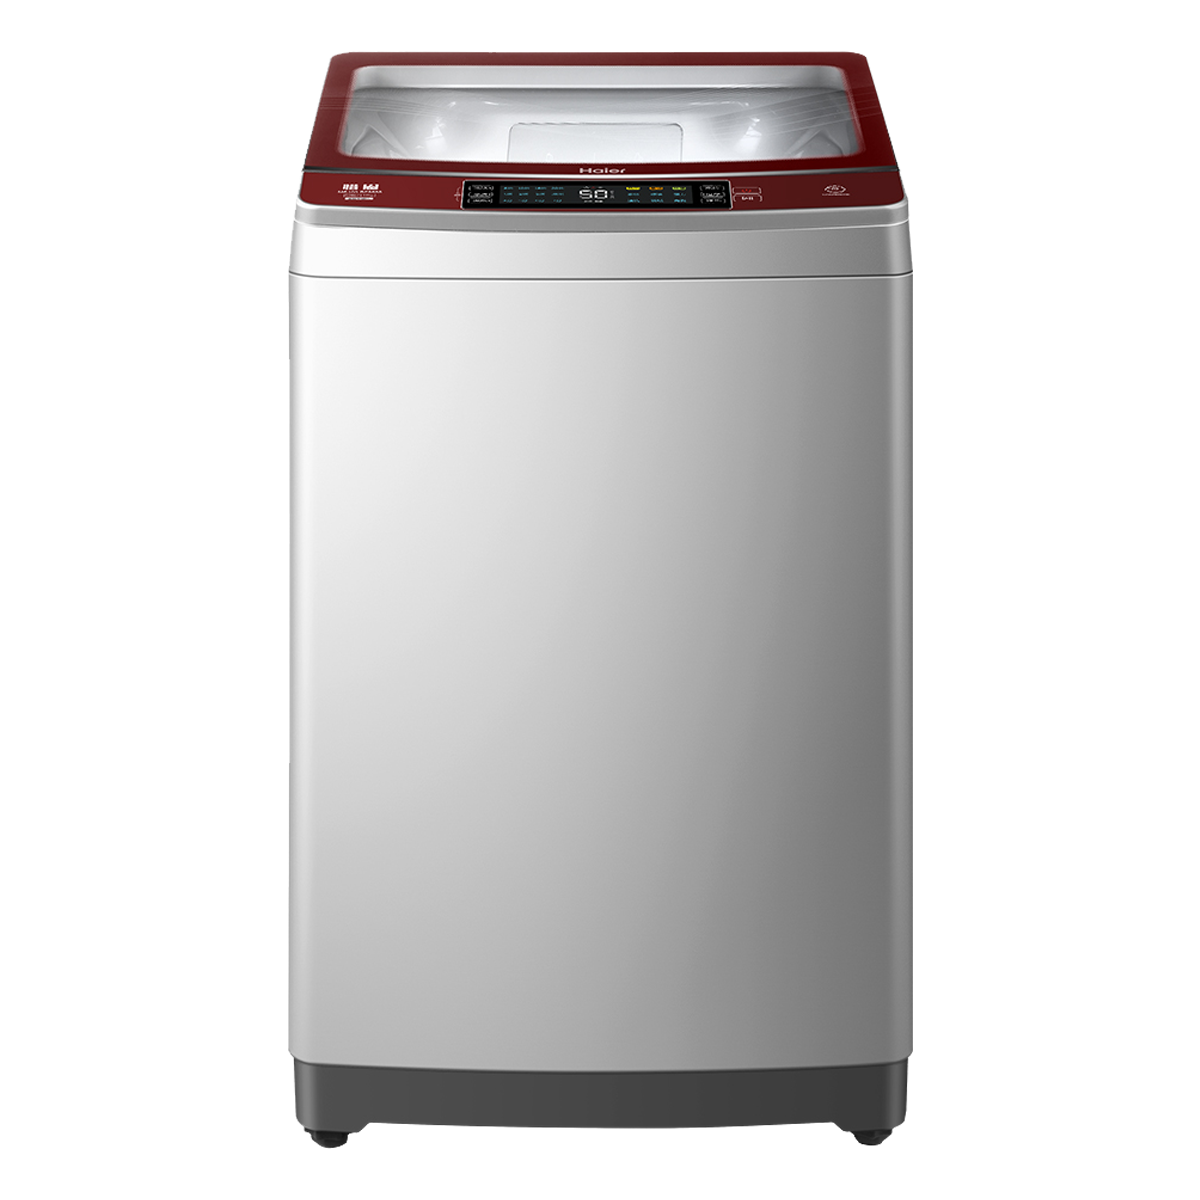 海尔Haier洗衣机 MS100-BZ8588 说明书